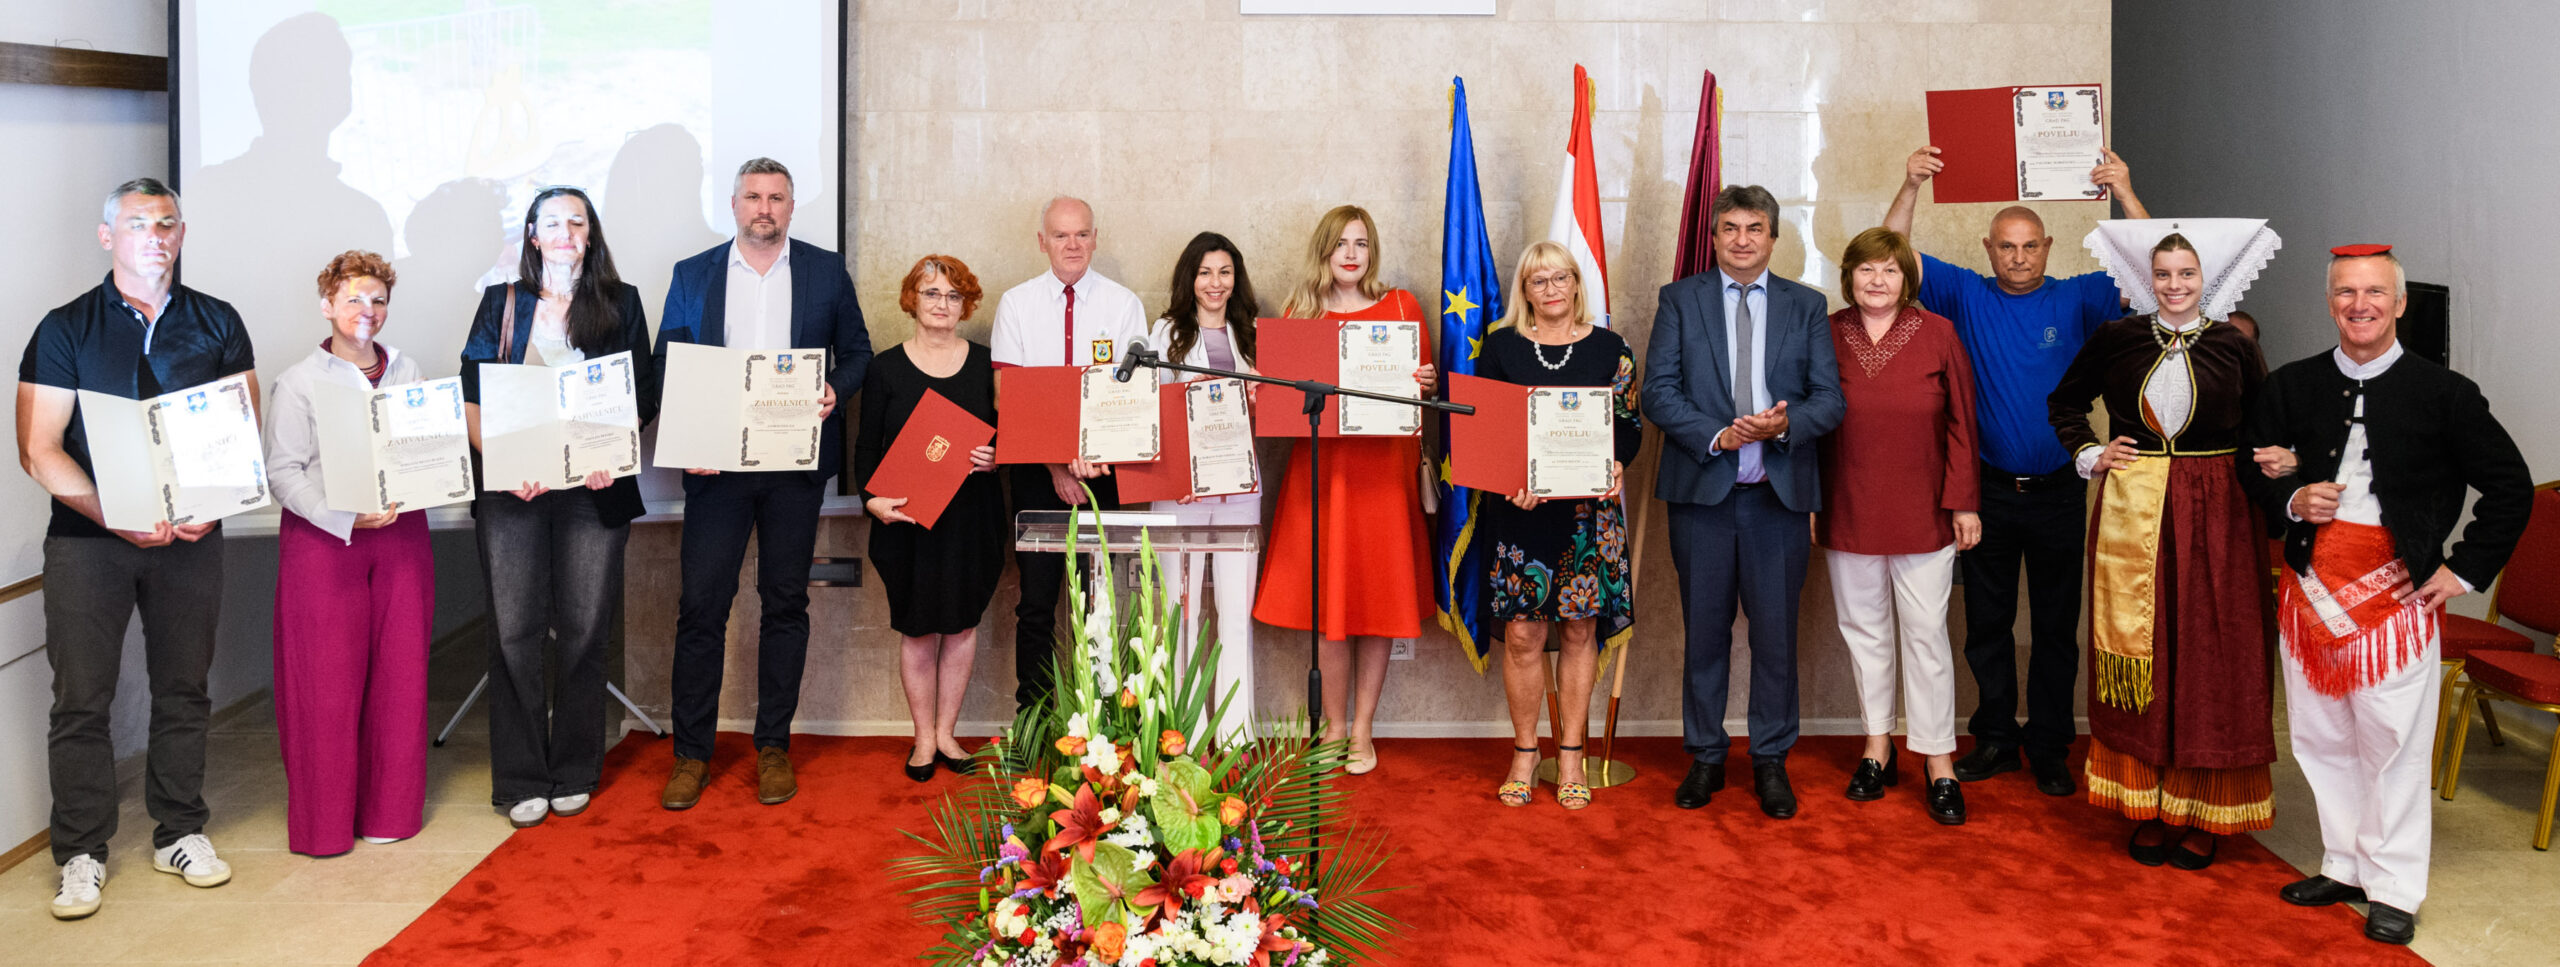 Ponosni dobitnici priznanja Grada Paga / Foto Luka JELIČIĆ